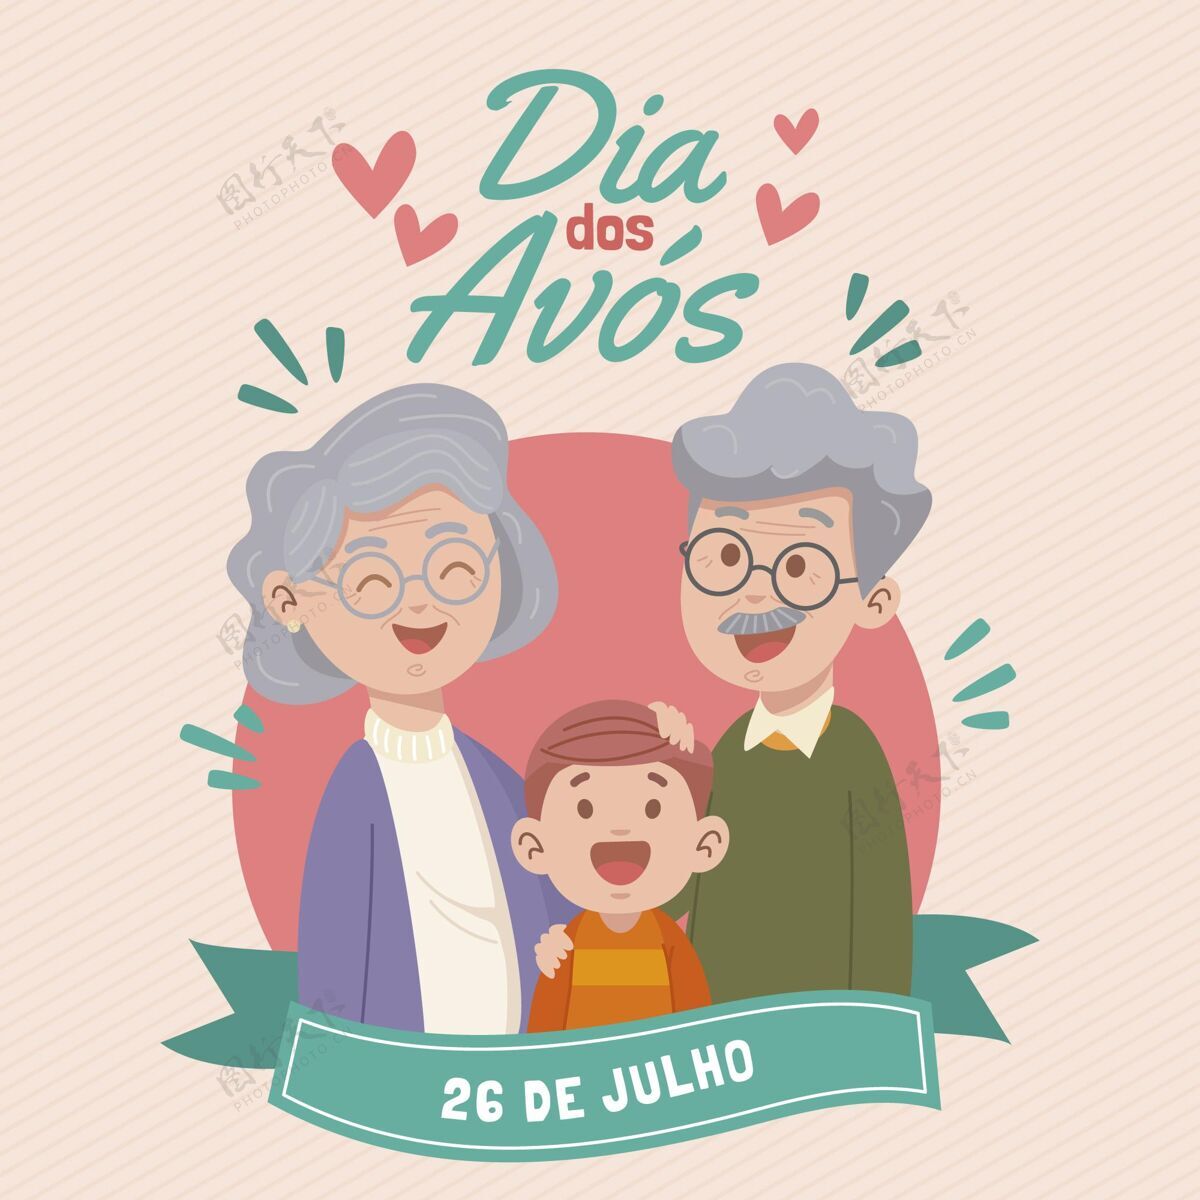 祖父母手绘diadosavos插图庆祝活动手绘